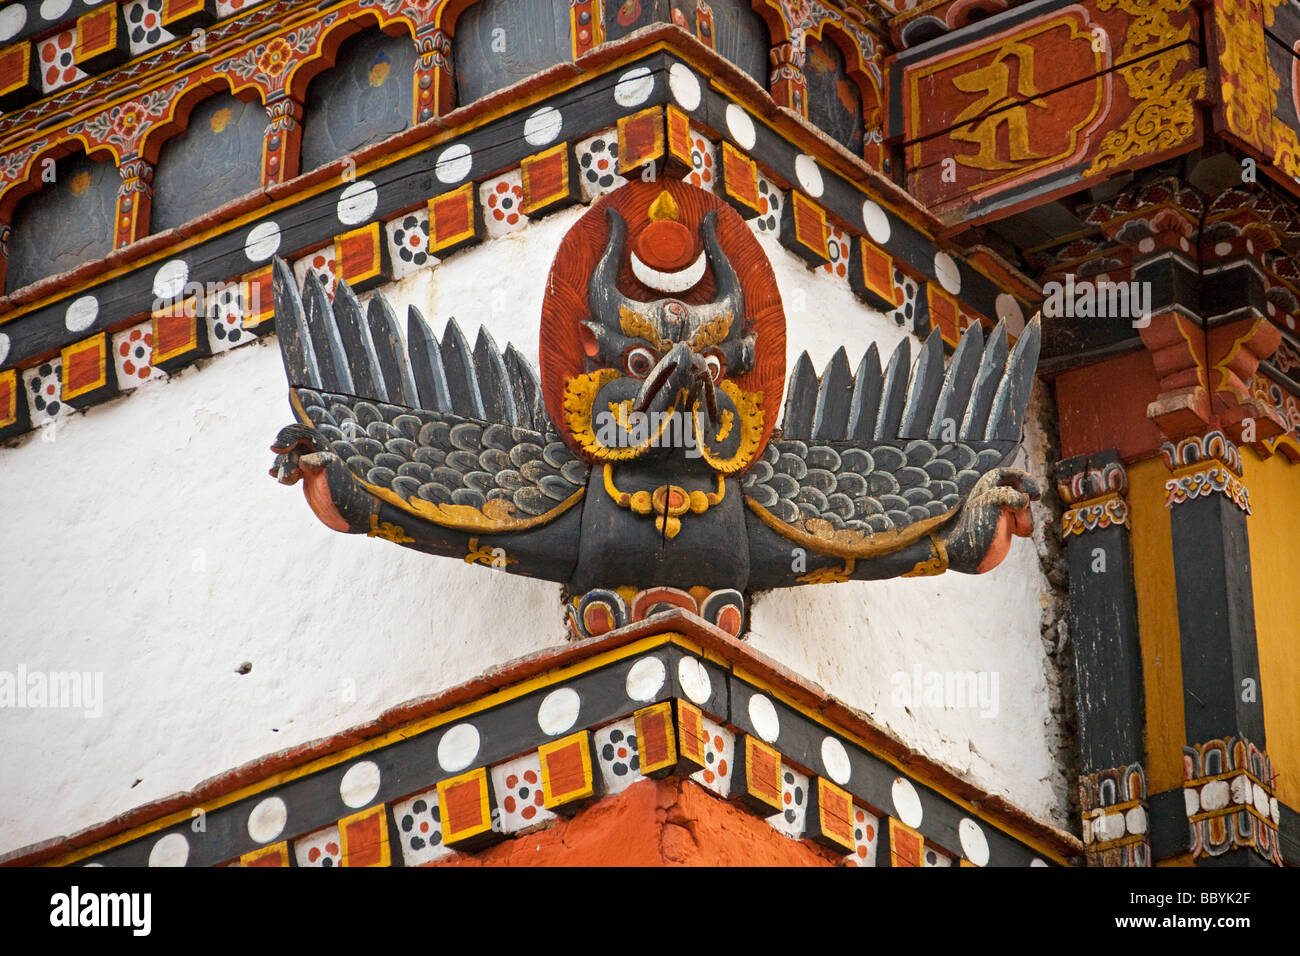 Détails de décoration masque sculpture , Tashi Chho Dzong (Tashichoedzong) Palais royal du Bhoutan Bhoutan Thimphu 91317 horizontal Banque D'Images